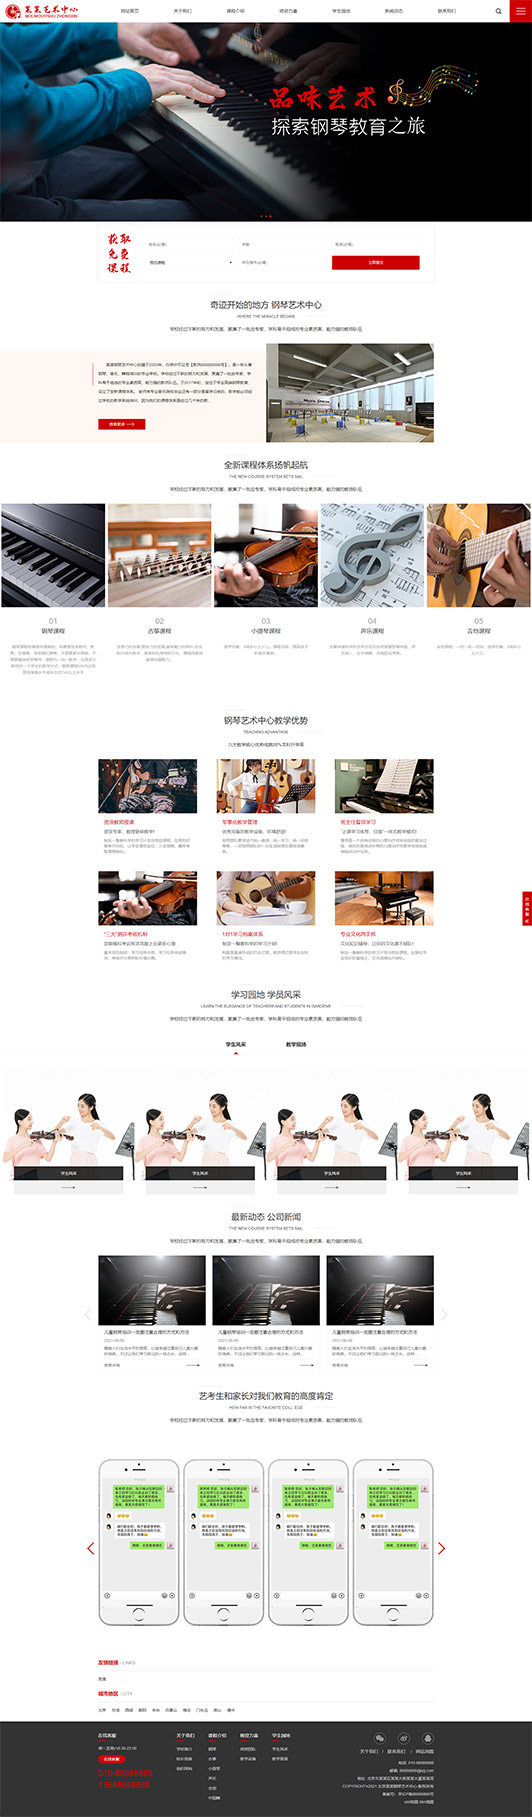 中山钢琴艺术培训公司响应式企业网站